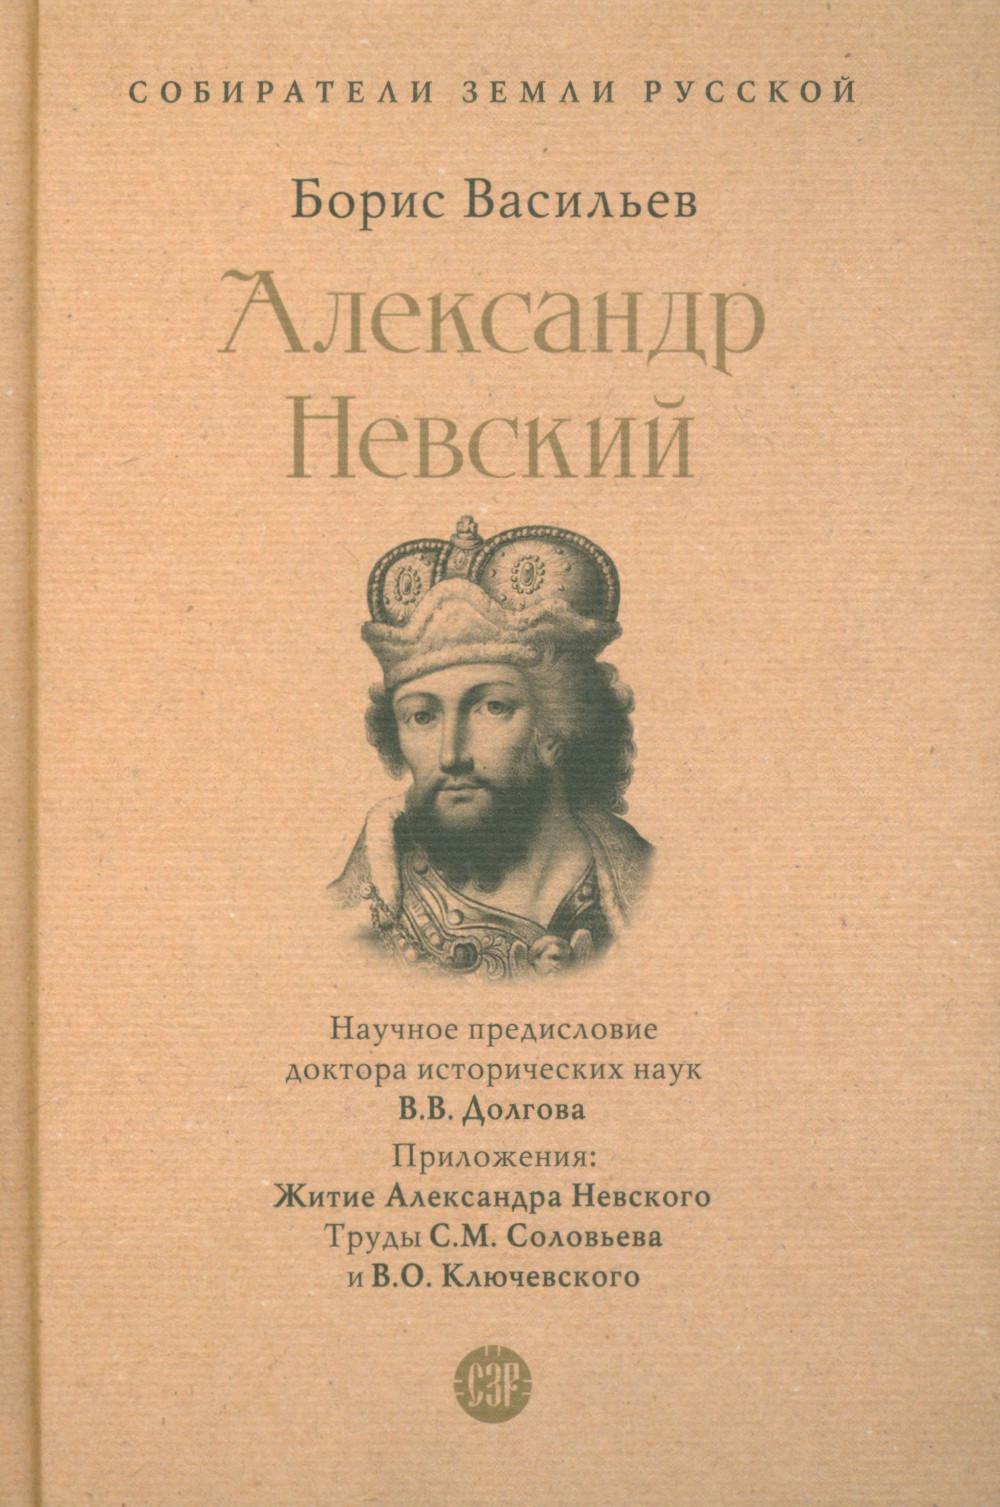 Александр Невский. Собиратели Земли Русской